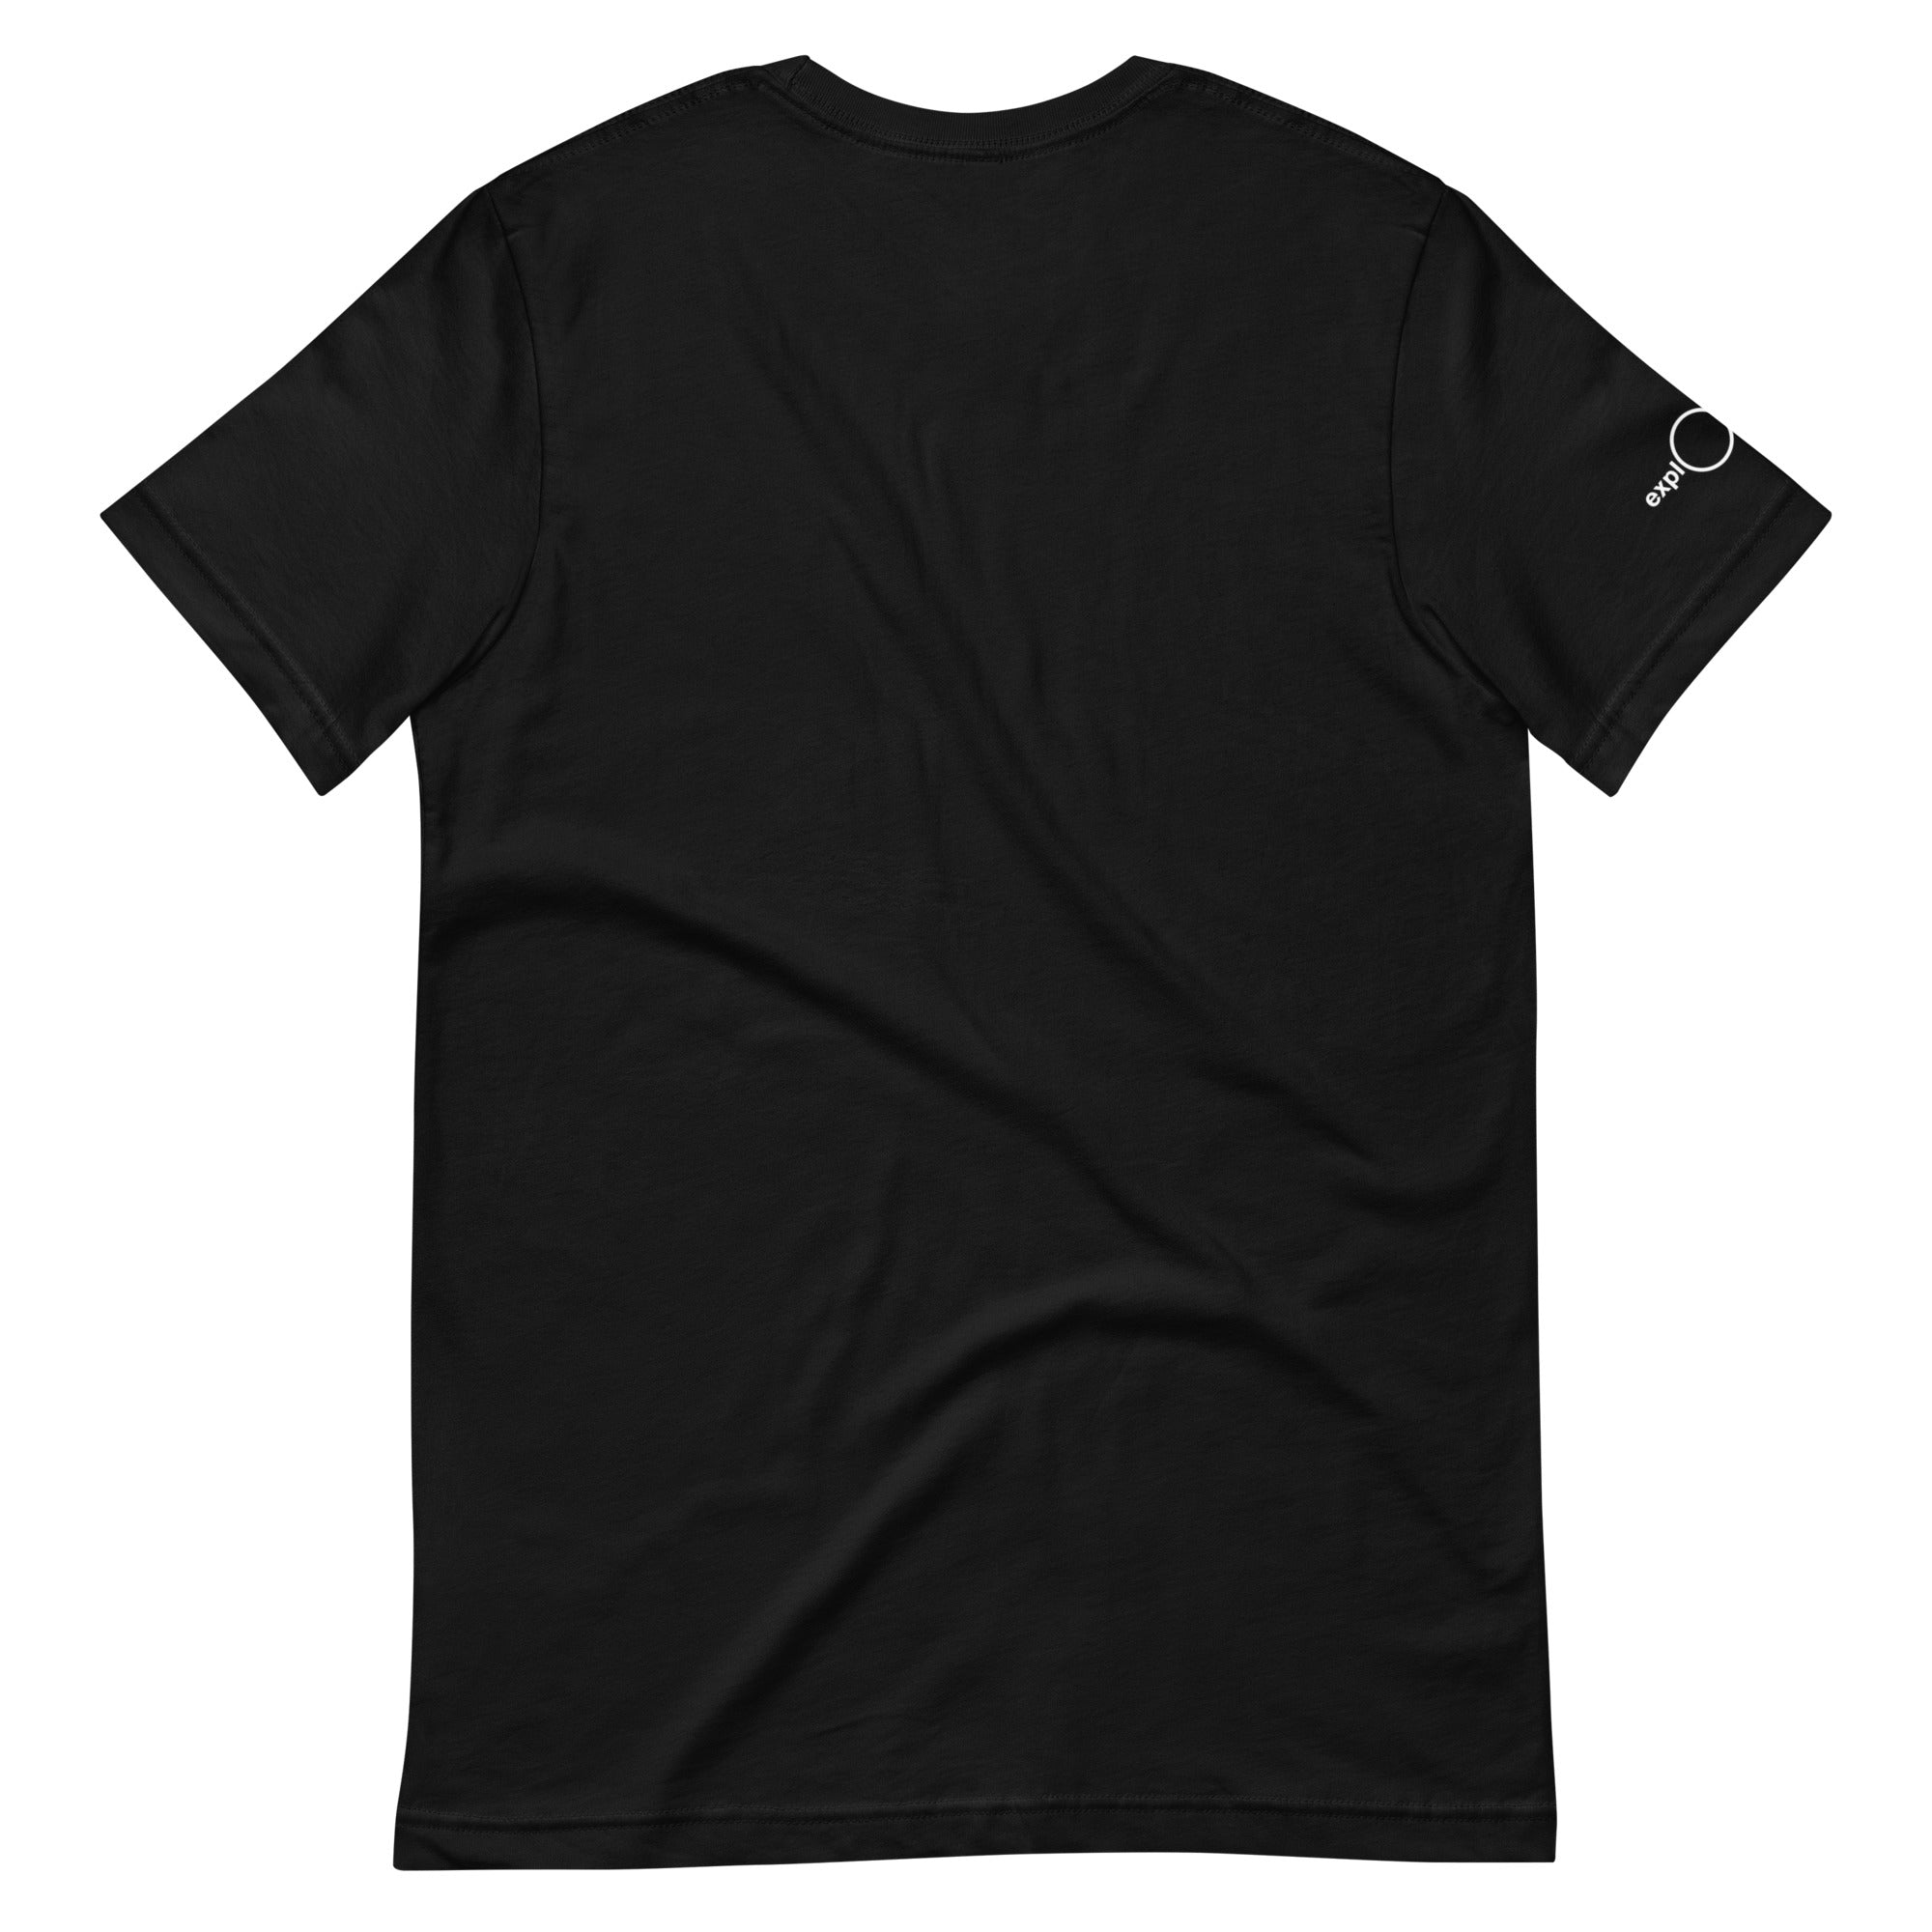 unisex-staple-t-shirt-black-back-660f09a325282.jpg